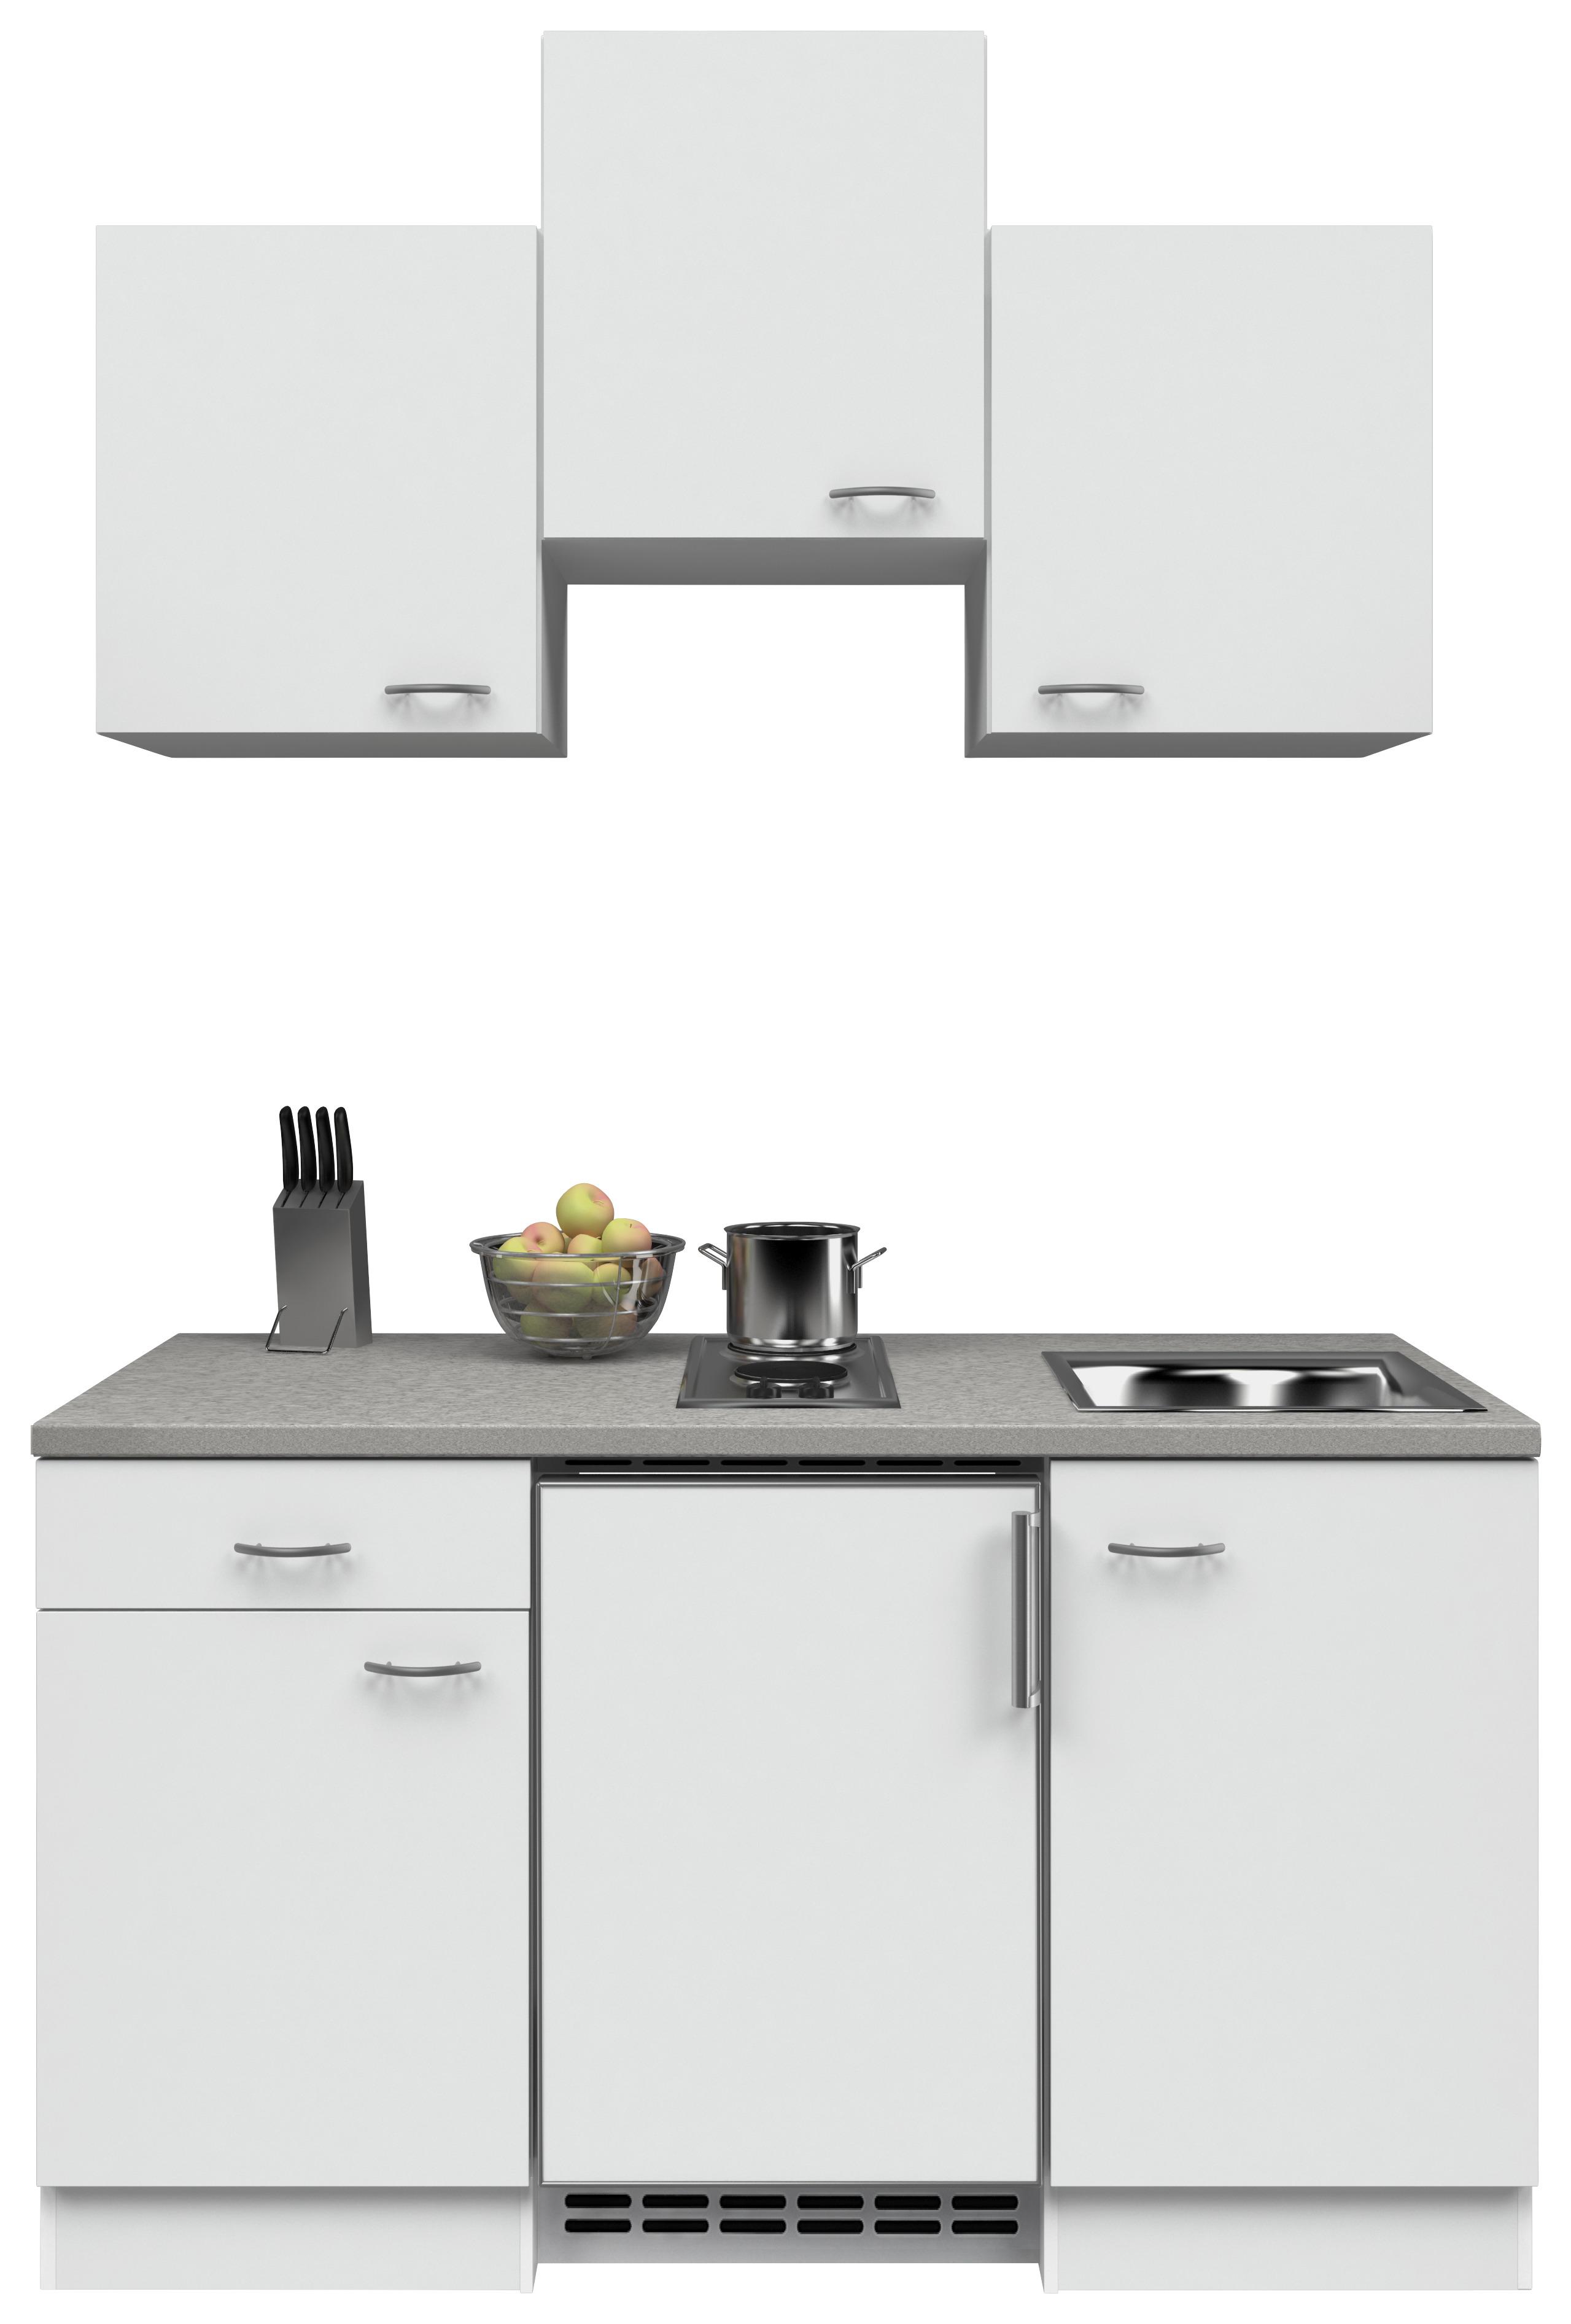 Miniküche mit Kühlschrank + Kochfeld 150cm Weiß/Grau Dekor - Edelstahlfarben/Weiß, MODERN (150cm) - FlexWell